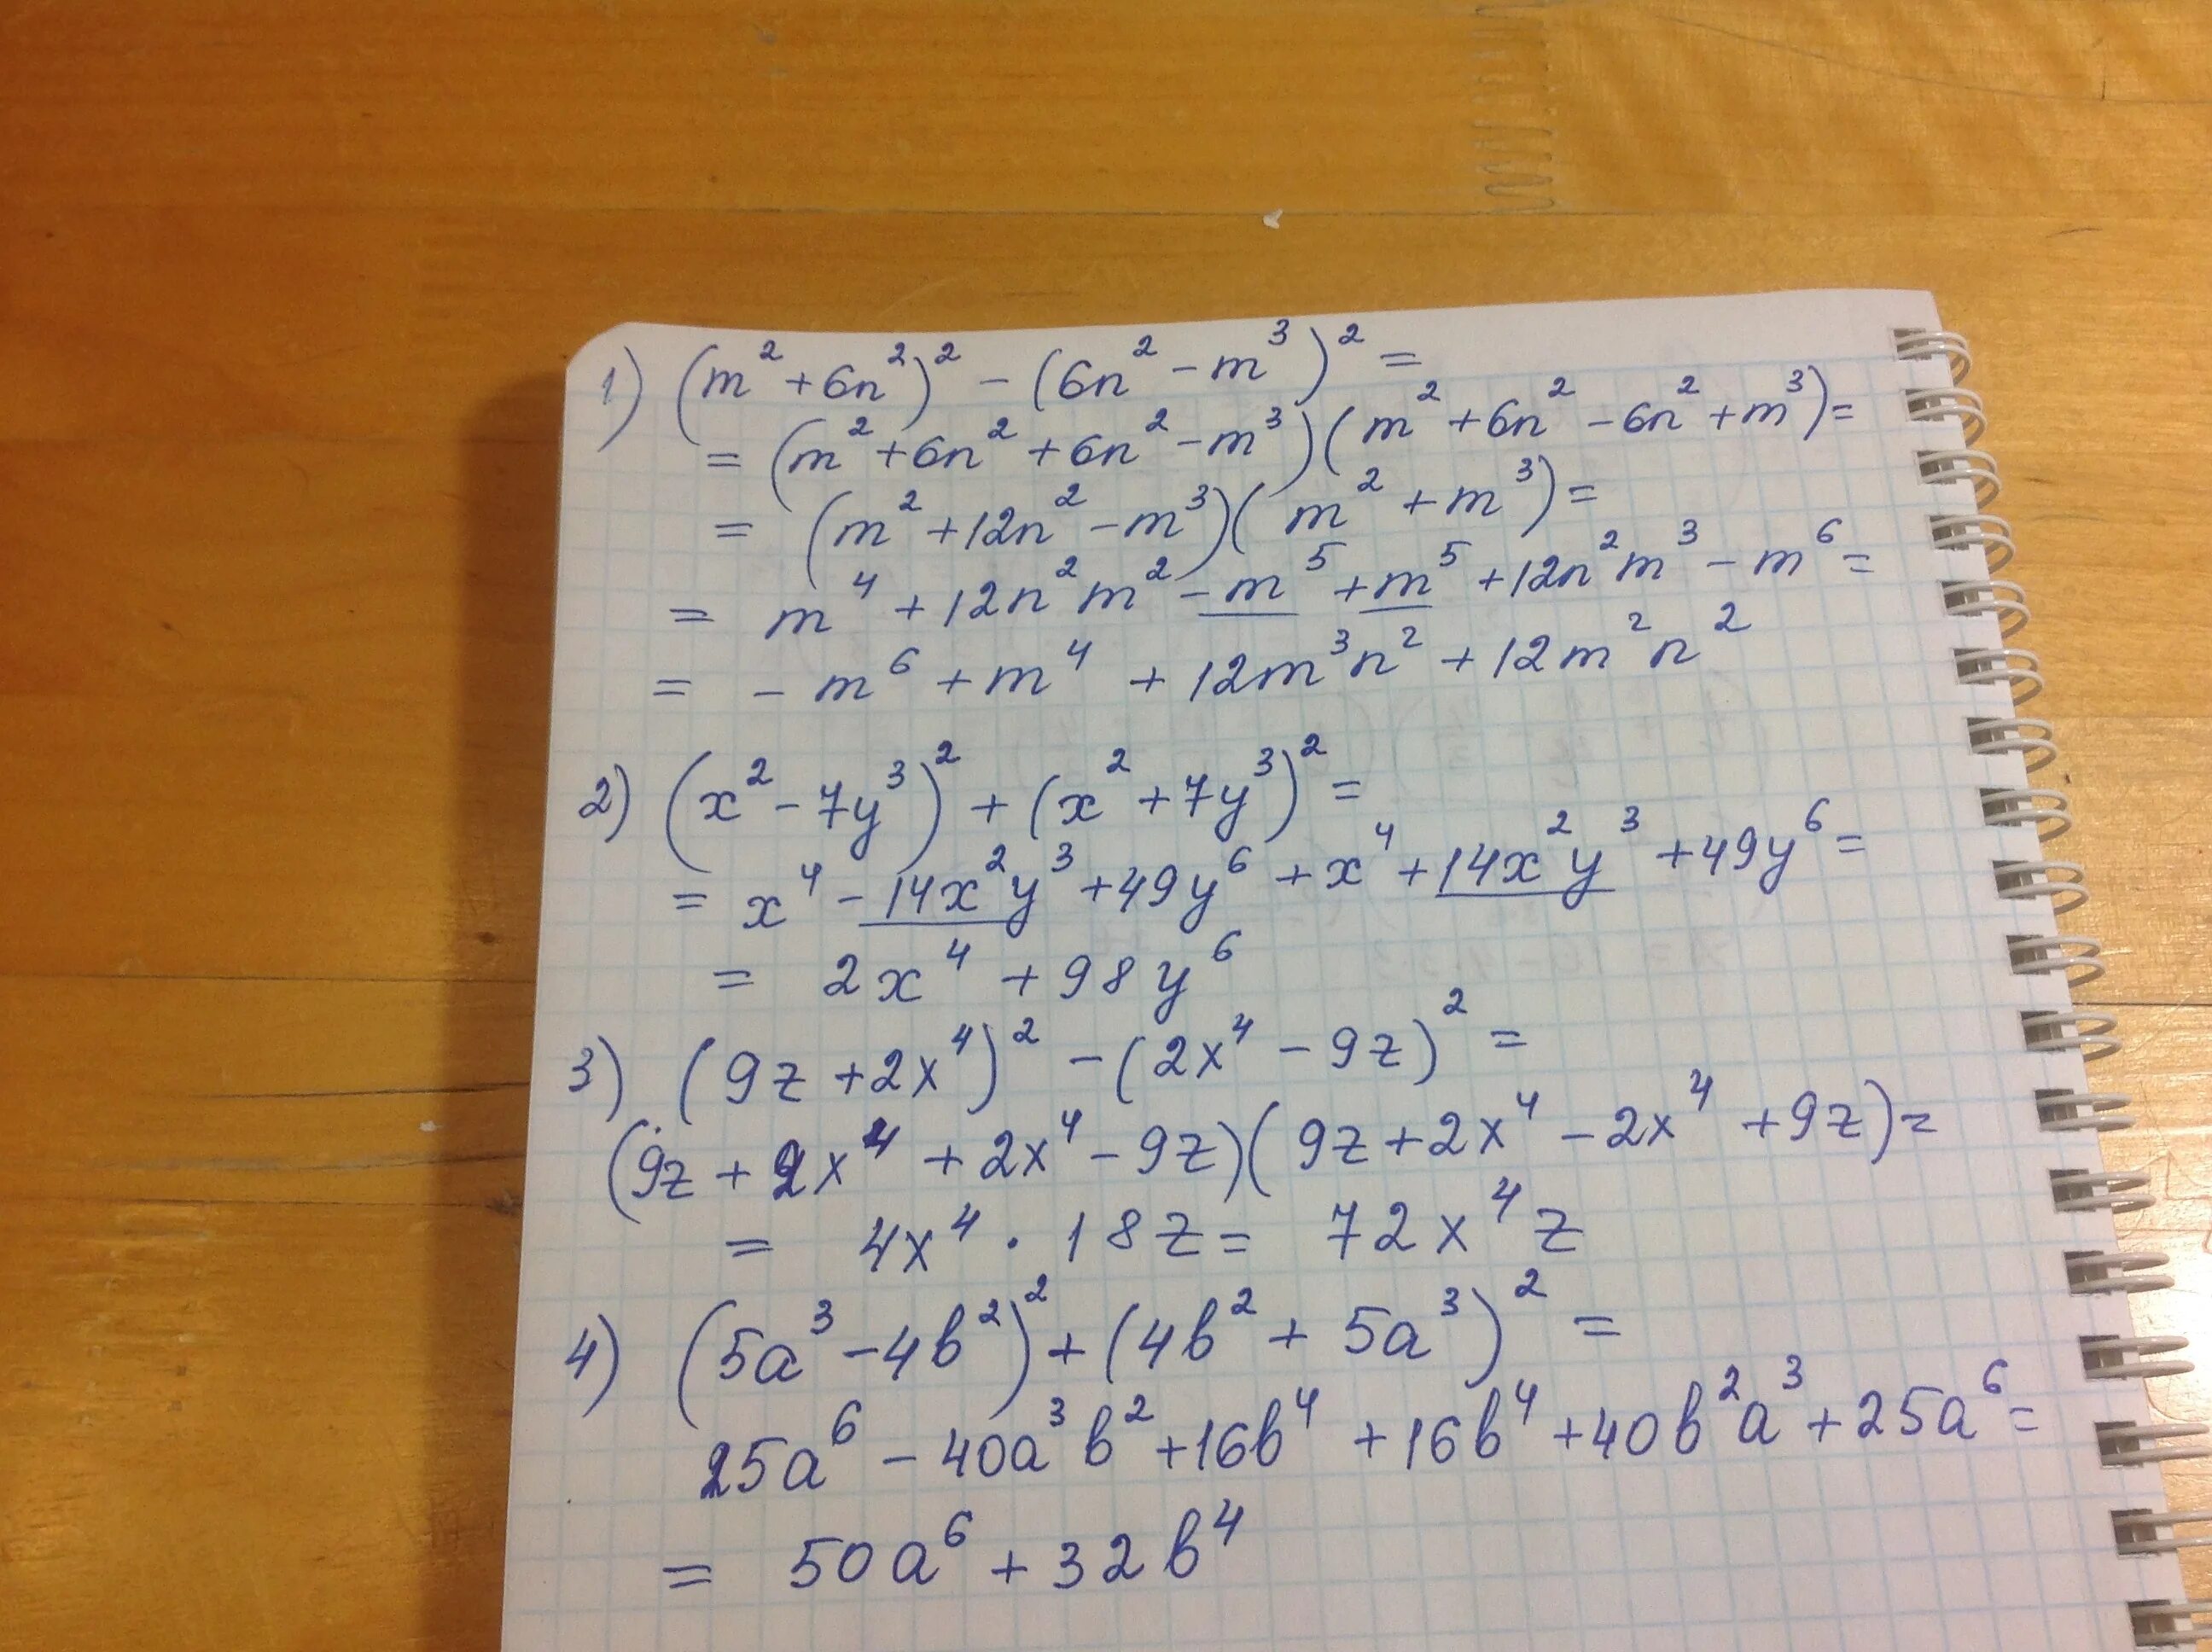 Упростите 3x 1 x 9 3x. (M+2)2 - (3m + 3)2 = 0. Упростите выражение 1 m n 1 m n 2 3m 3n. (0-3)^2+(5-2)^2. (3x+1)^2+(x-7)^2.